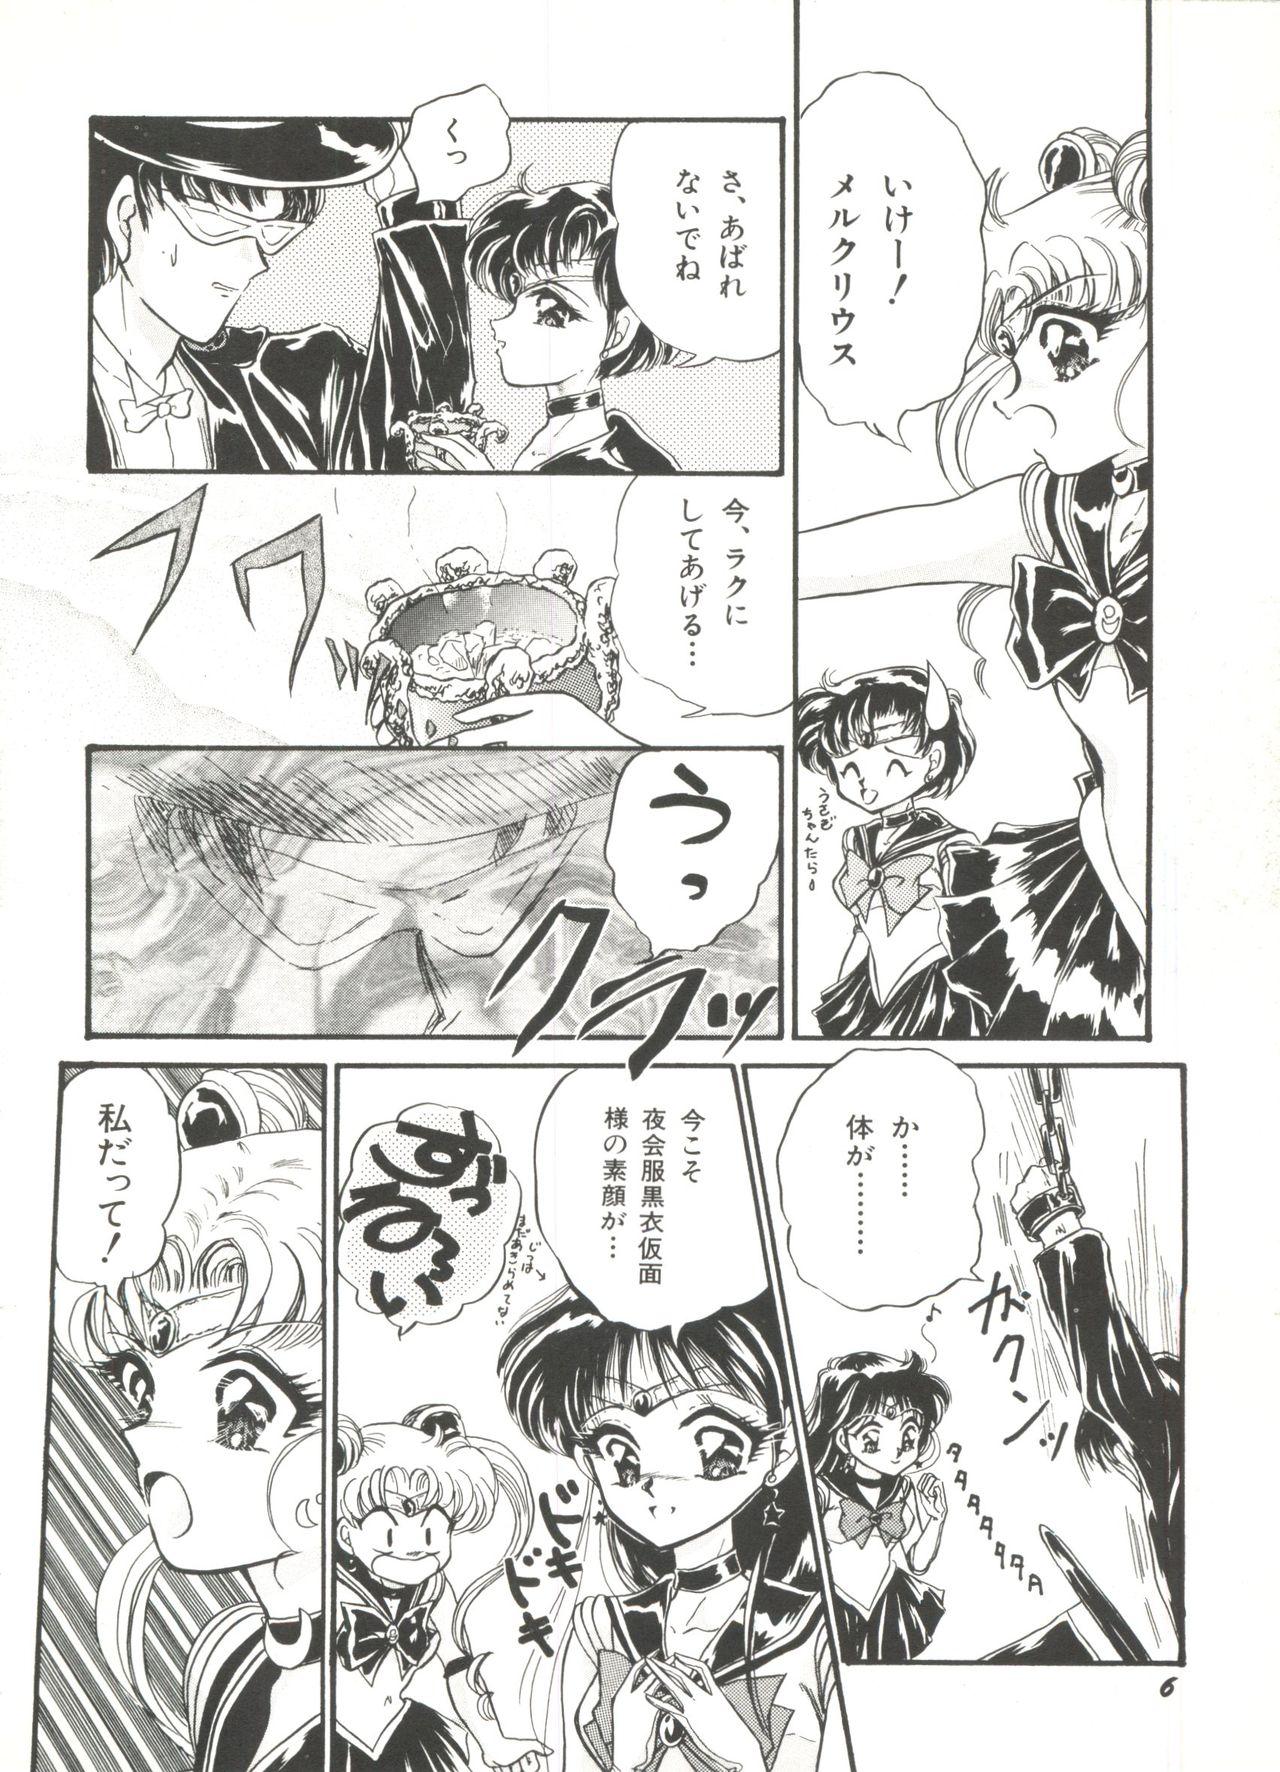 Curvy Bishoujo Doujinshi Anthology 1 - Sailor moon Fatal fury Free Oral Sex - Page 8